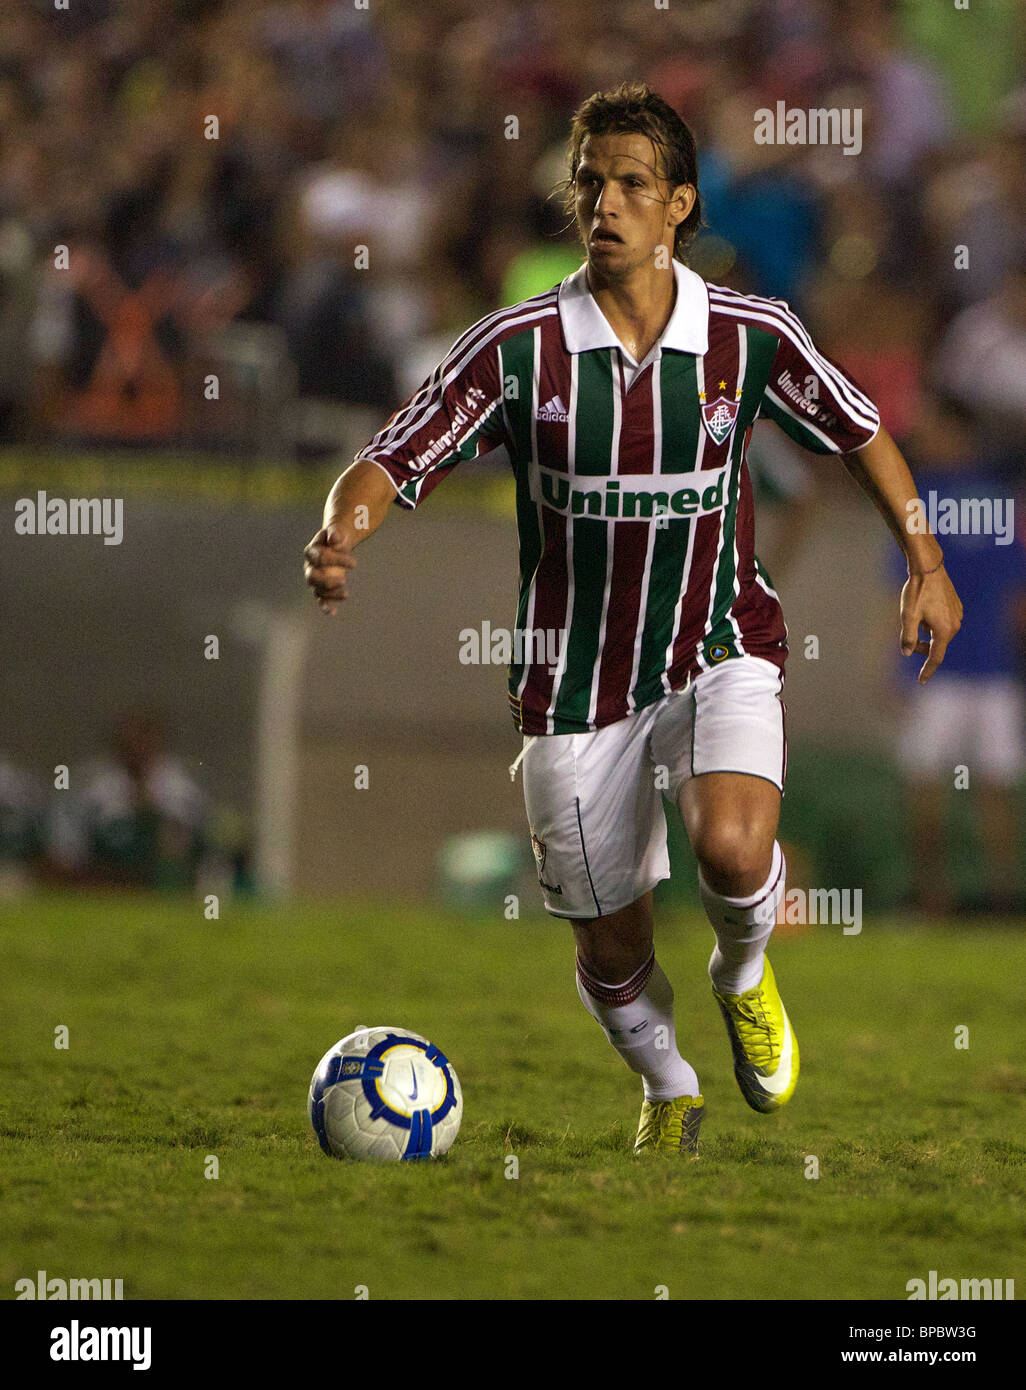 Diguinho in action for Fluminense during the Fluminense FC V CR Vasco da Gama Futebol Brasileirao League match at Maracana. Stock Photo